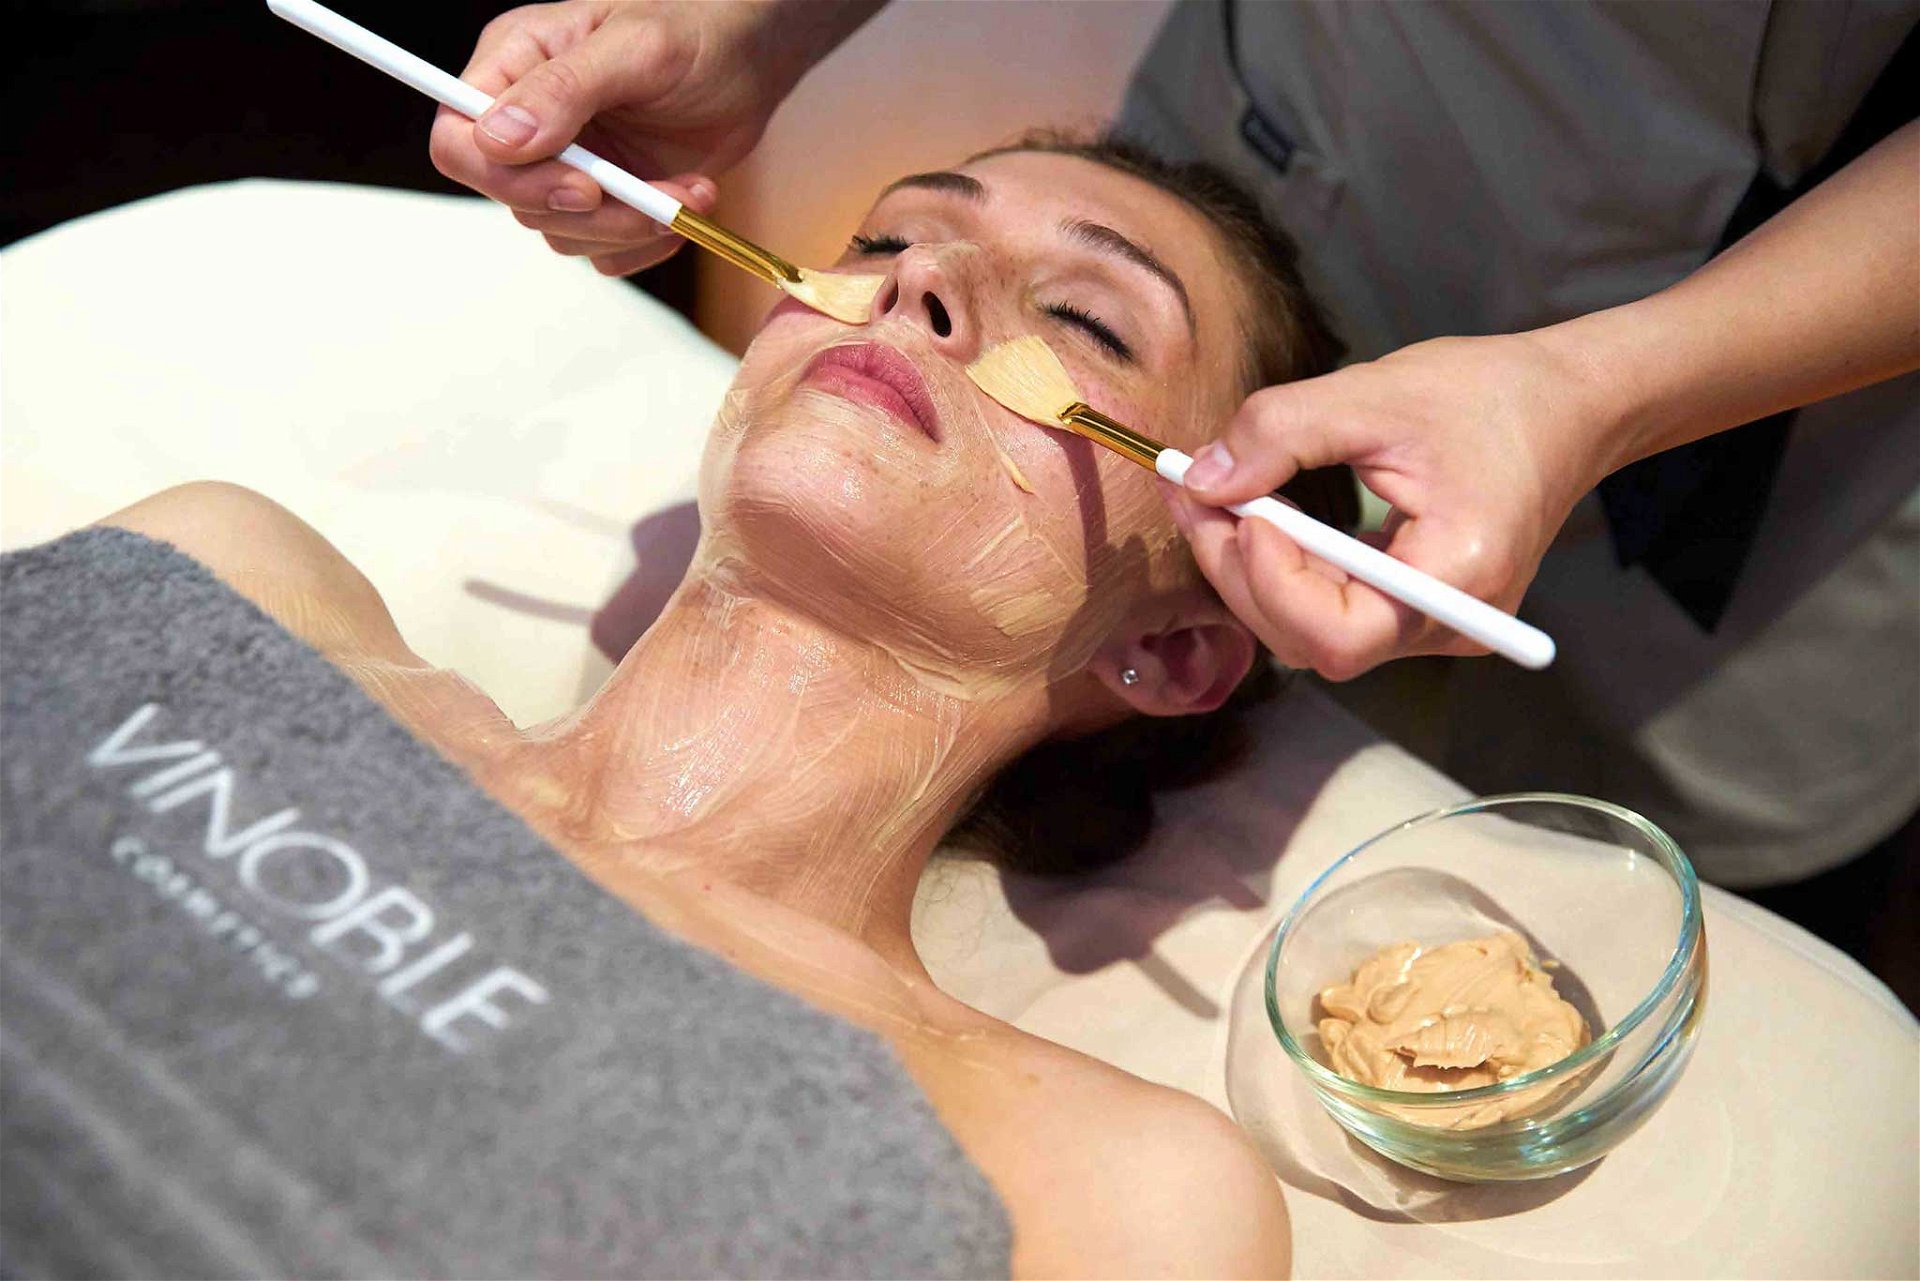 Für alle Treatments wird die hochwertige Naturkosmetiklinie »Vinoble Cosmetics« verwendet. sanssouci-wien.com/spa-und-fitness